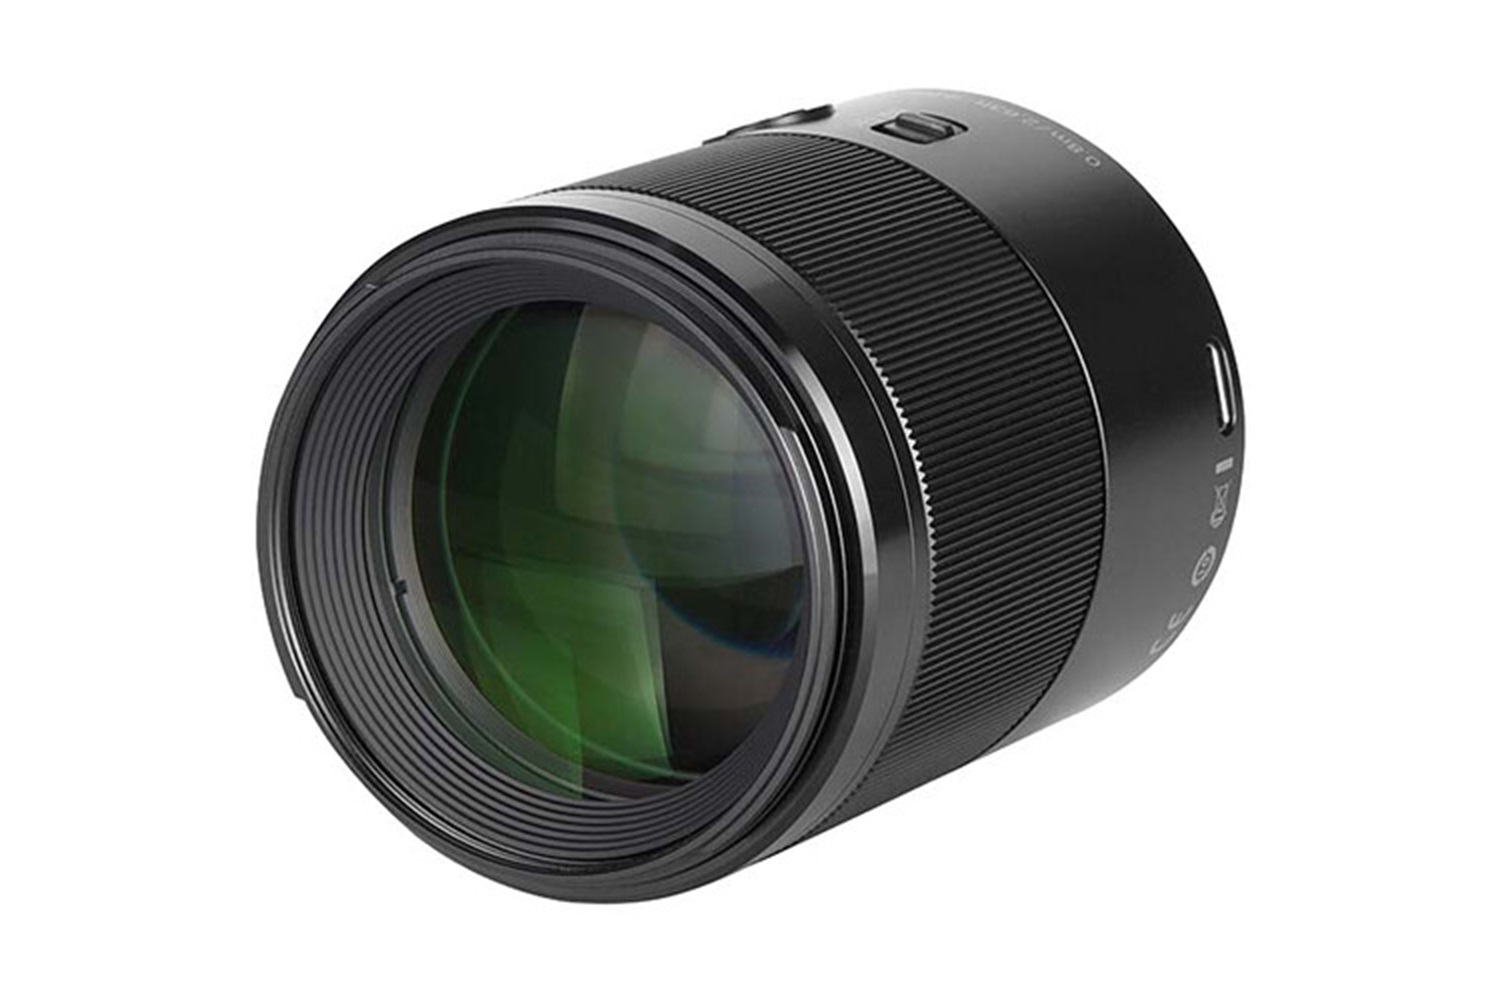 Yongnuo YN85mm F1.8Z DF DSM Nikon Uyumlu Z-Mount Lens